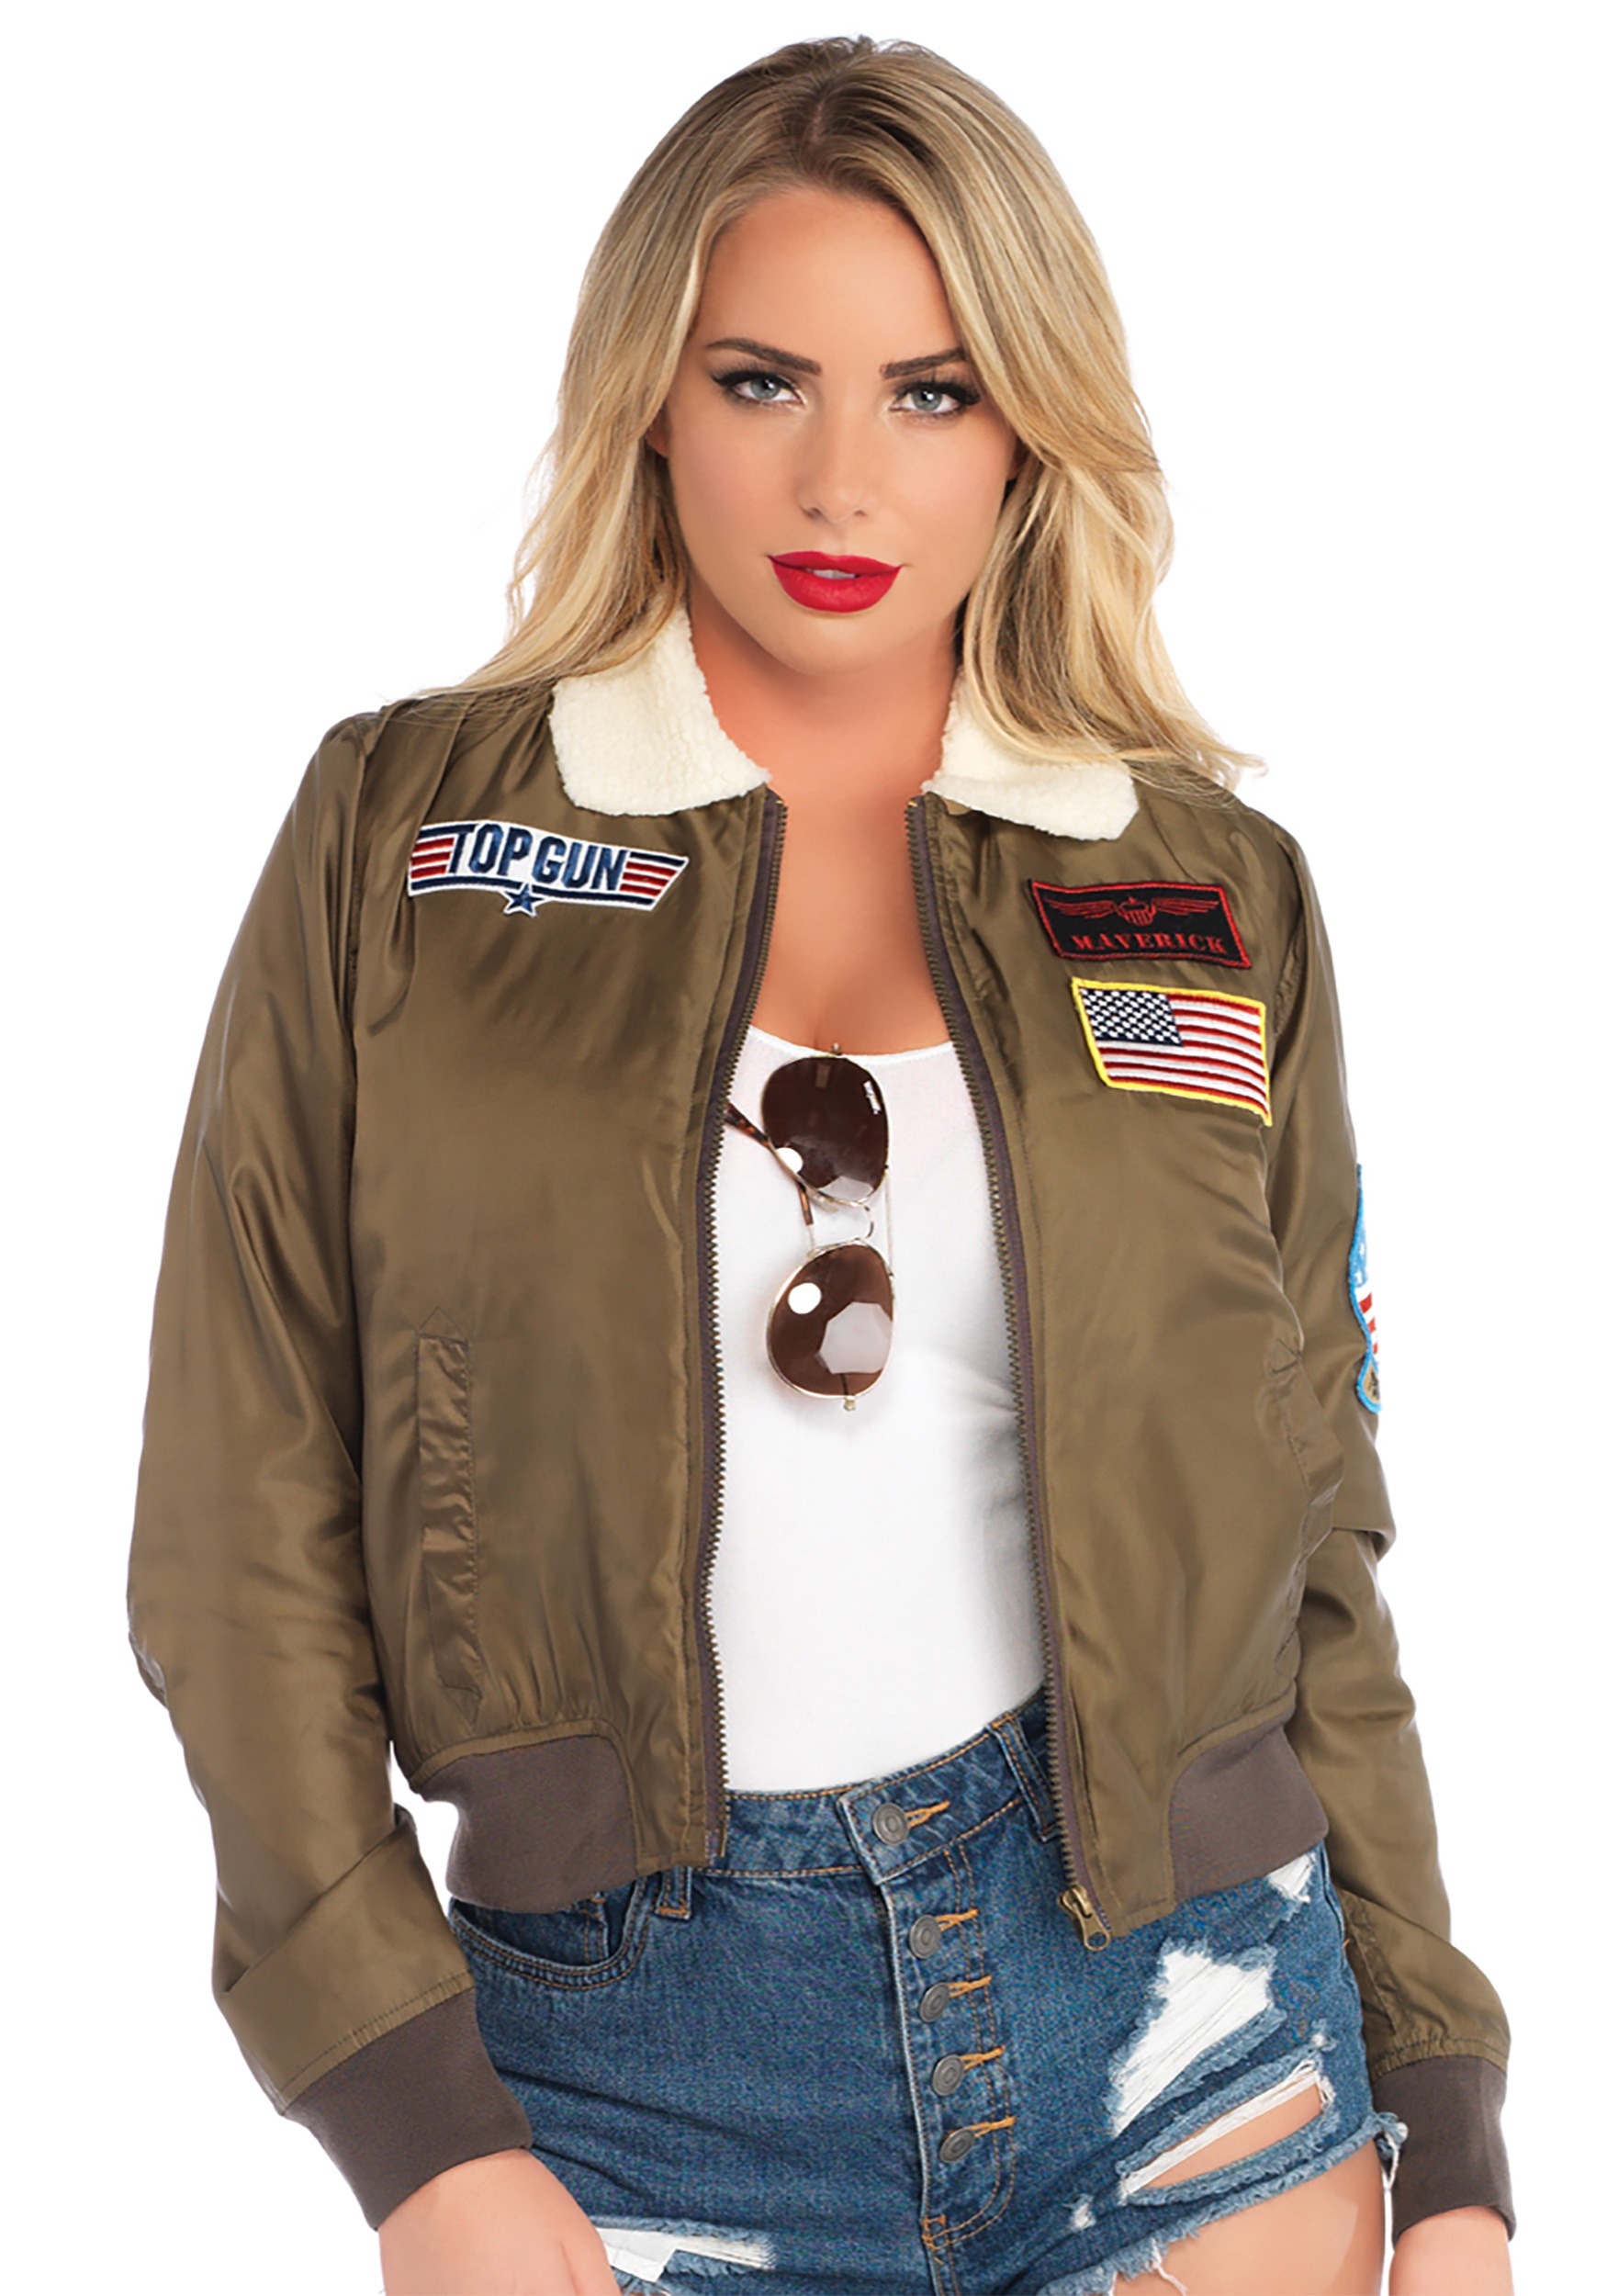 Top Gun Women’s Bomber Costume Jacket